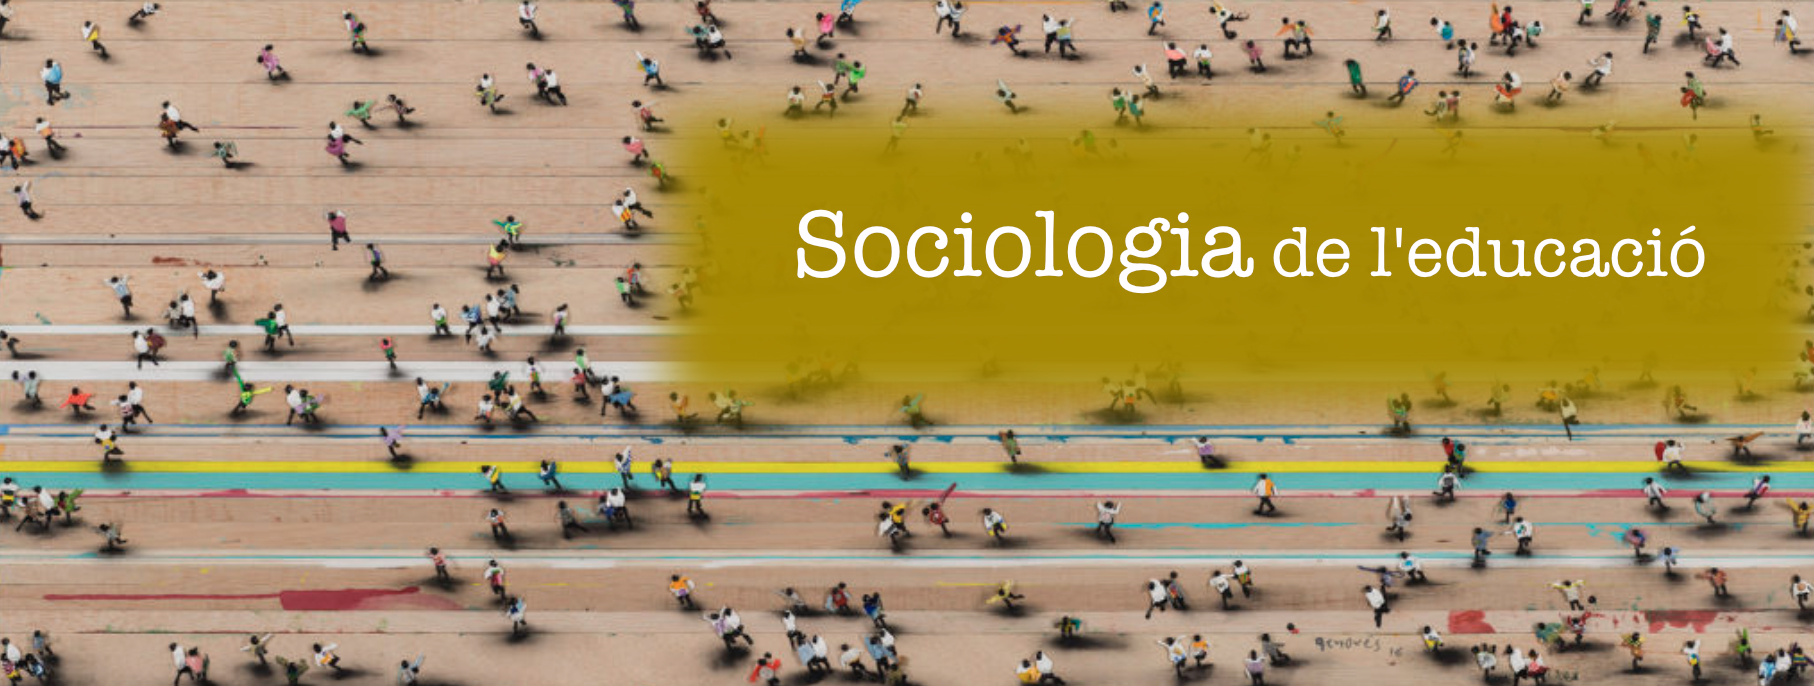 Sociologia i economia de l'educació (3101G05022/2020)